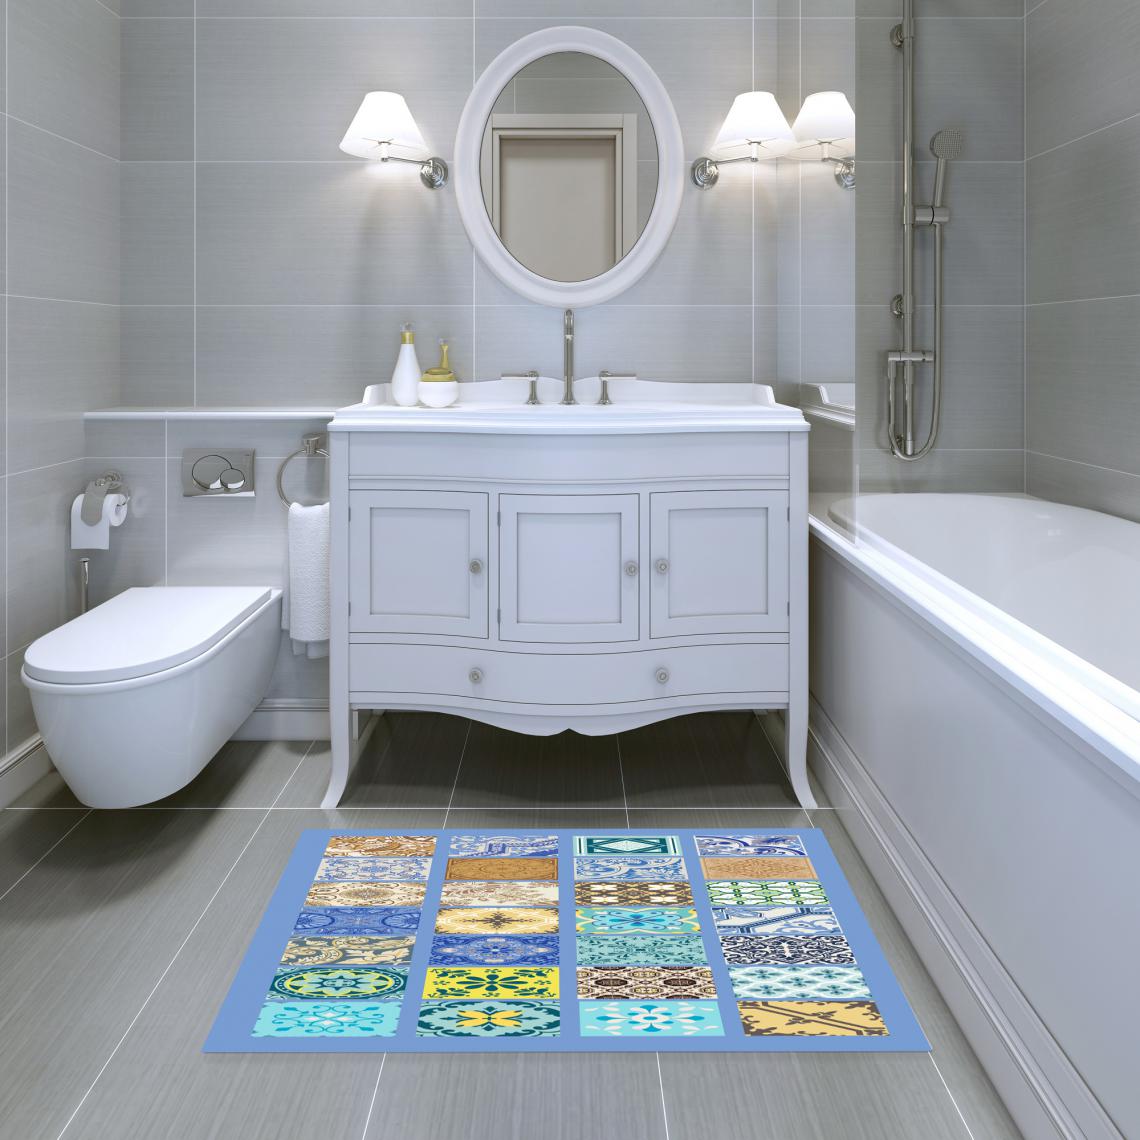 Alter - Tapis de salle de bain, 100% Made in Italy, Tapis antitache avec impression numérique, Tapis antidérapant et lavable, Modèle Alana, 120x70 cm - Tapis